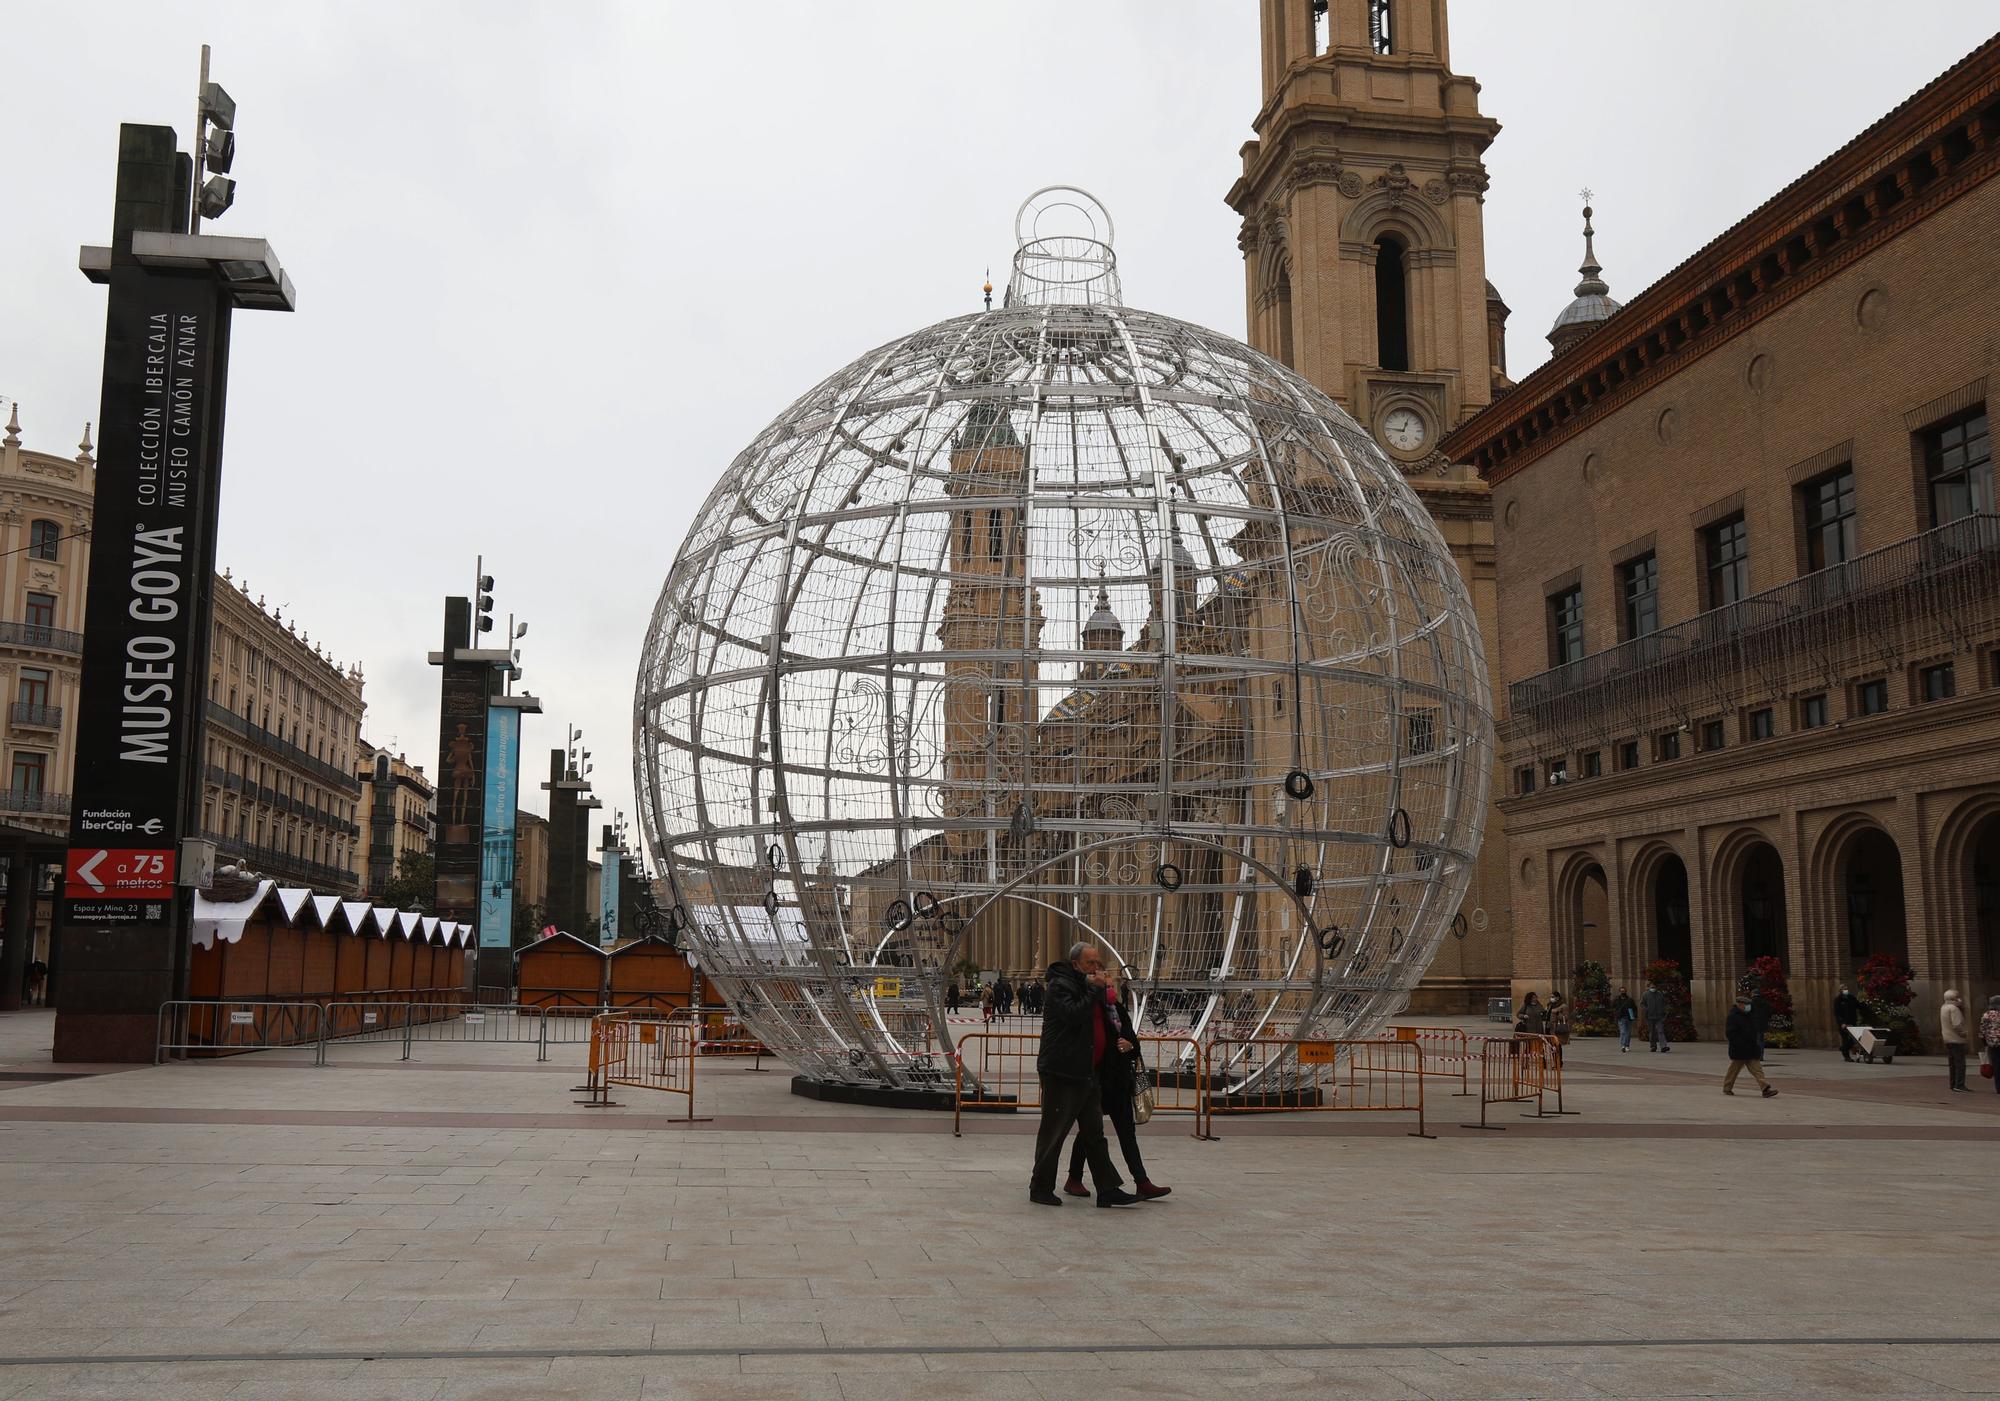 Las calles y los comercios de Zaragoza preparan su decoración navideña